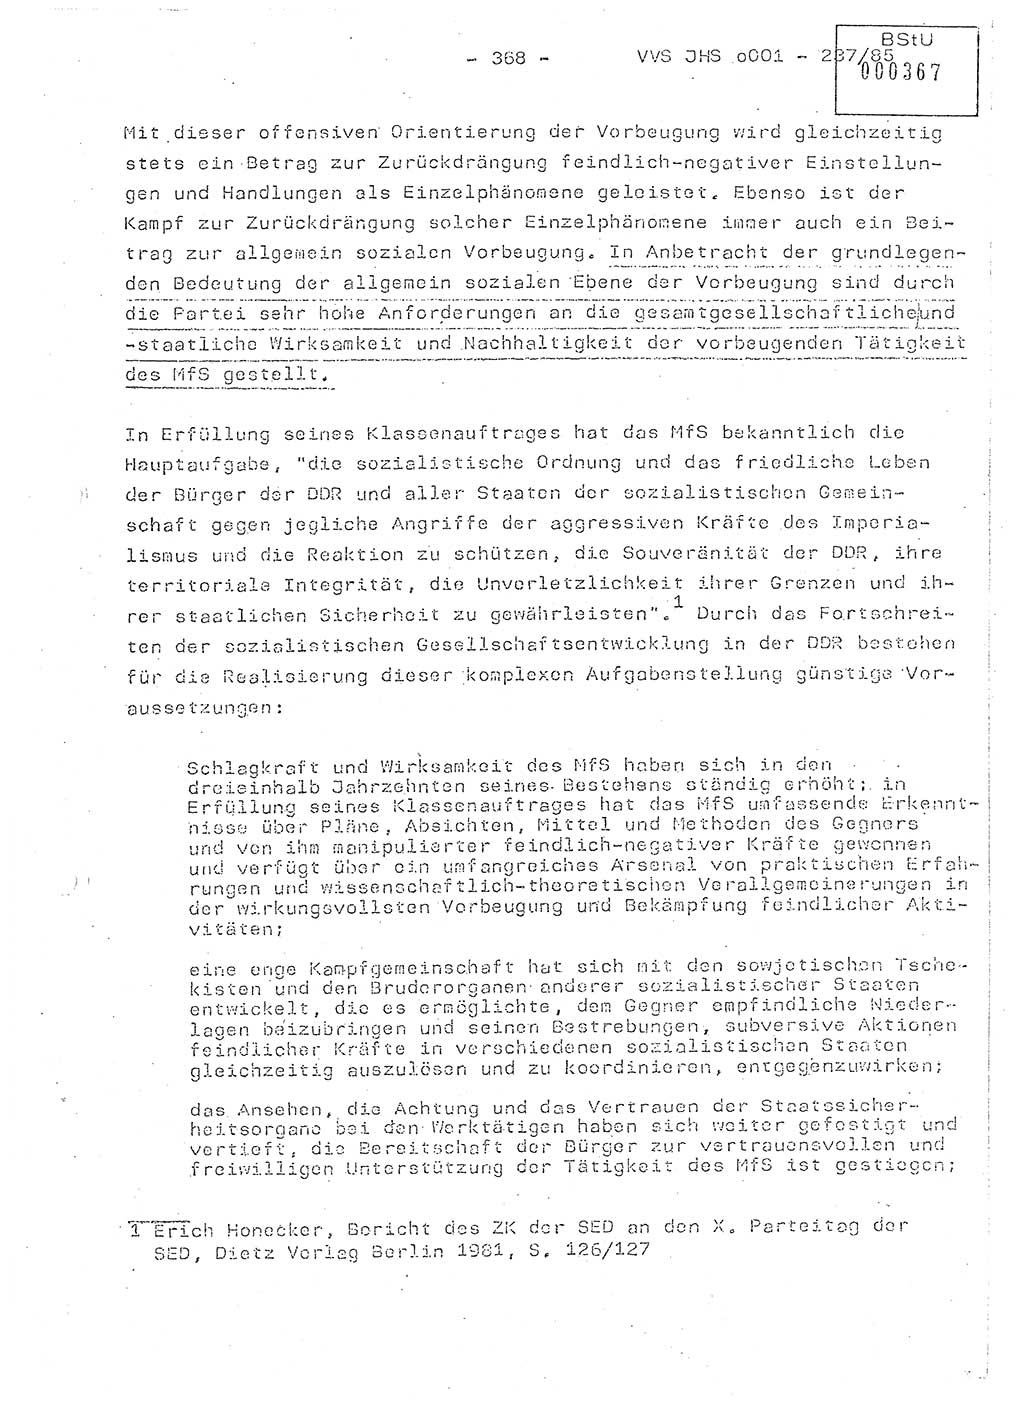 Dissertation Oberstleutnant Peter Jakulski (JHS), Oberstleutnat Christian Rudolph (HA Ⅸ), Major Horst Böttger (ZMD), Major Wolfgang Grüneberg (JHS), Major Albert Meutsch (JHS), Ministerium für Staatssicherheit (MfS) [Deutsche Demokratische Republik (DDR)], Juristische Hochschule (JHS), Vertrauliche Verschlußsache (VVS) o001-237/85, Potsdam 1985, Seite 368 (Diss. MfS DDR JHS VVS o001-237/85 1985, S. 368)